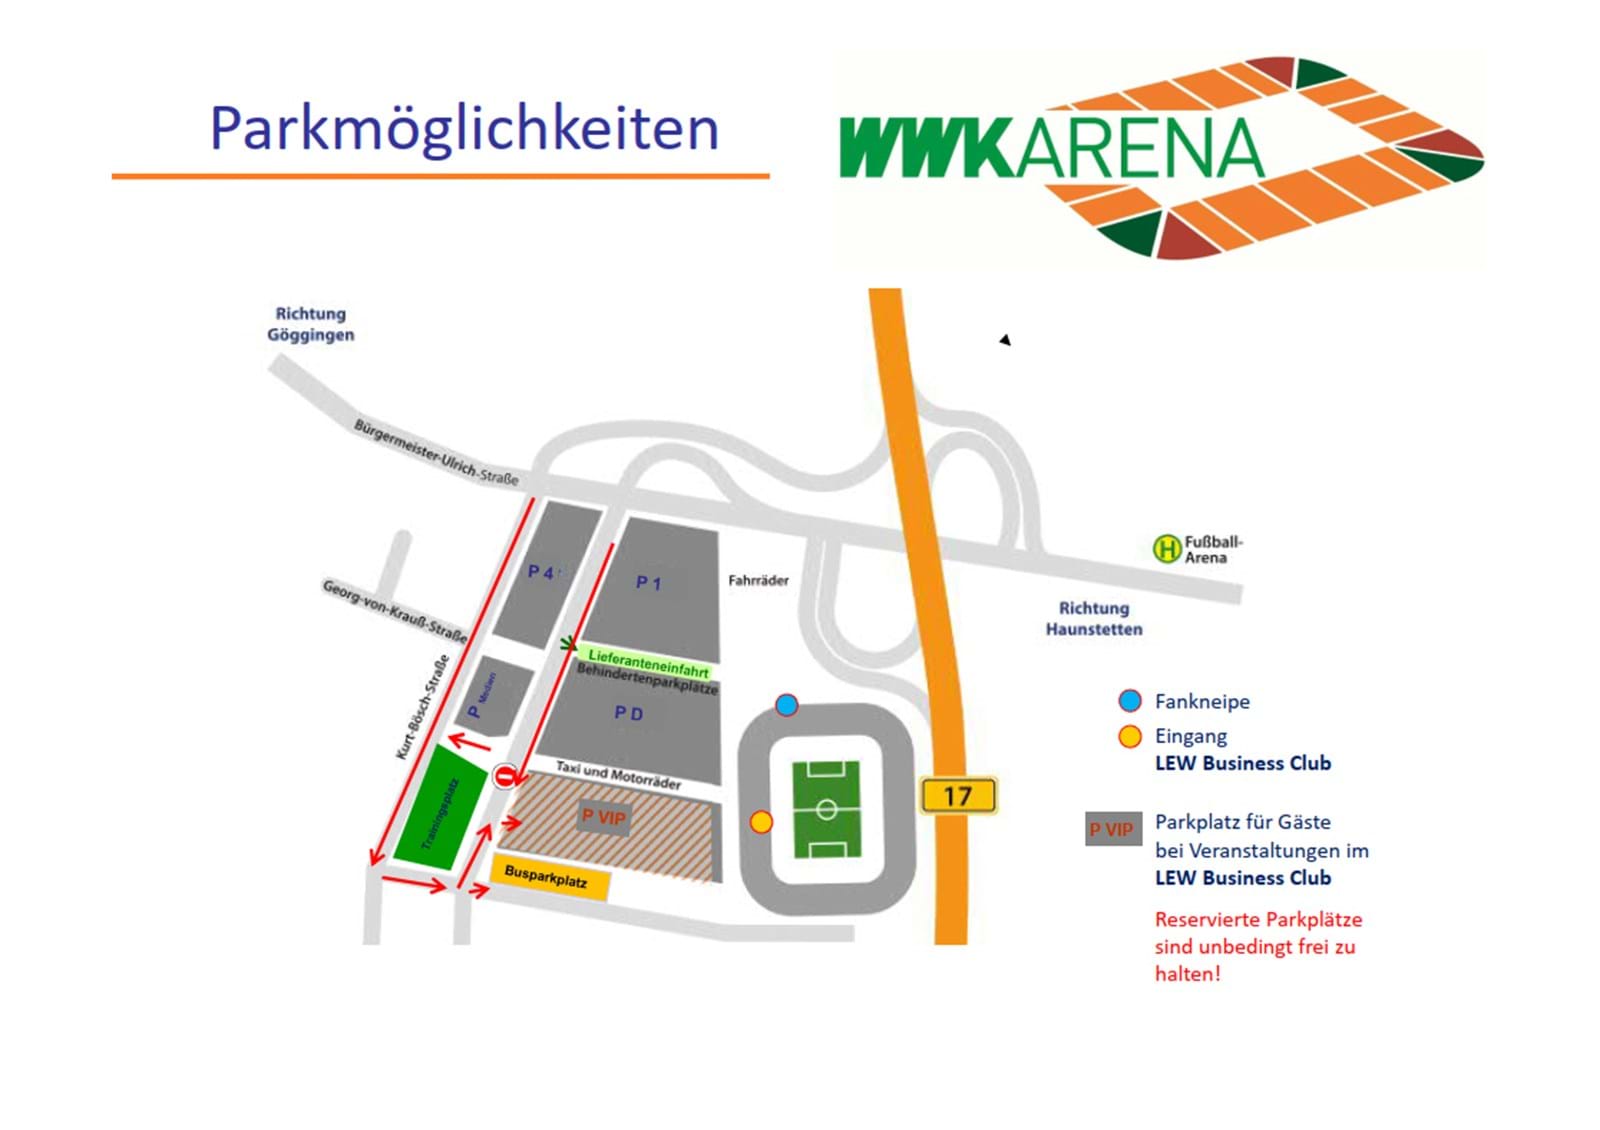 Parkmöglichkeiten in der WWK Arena